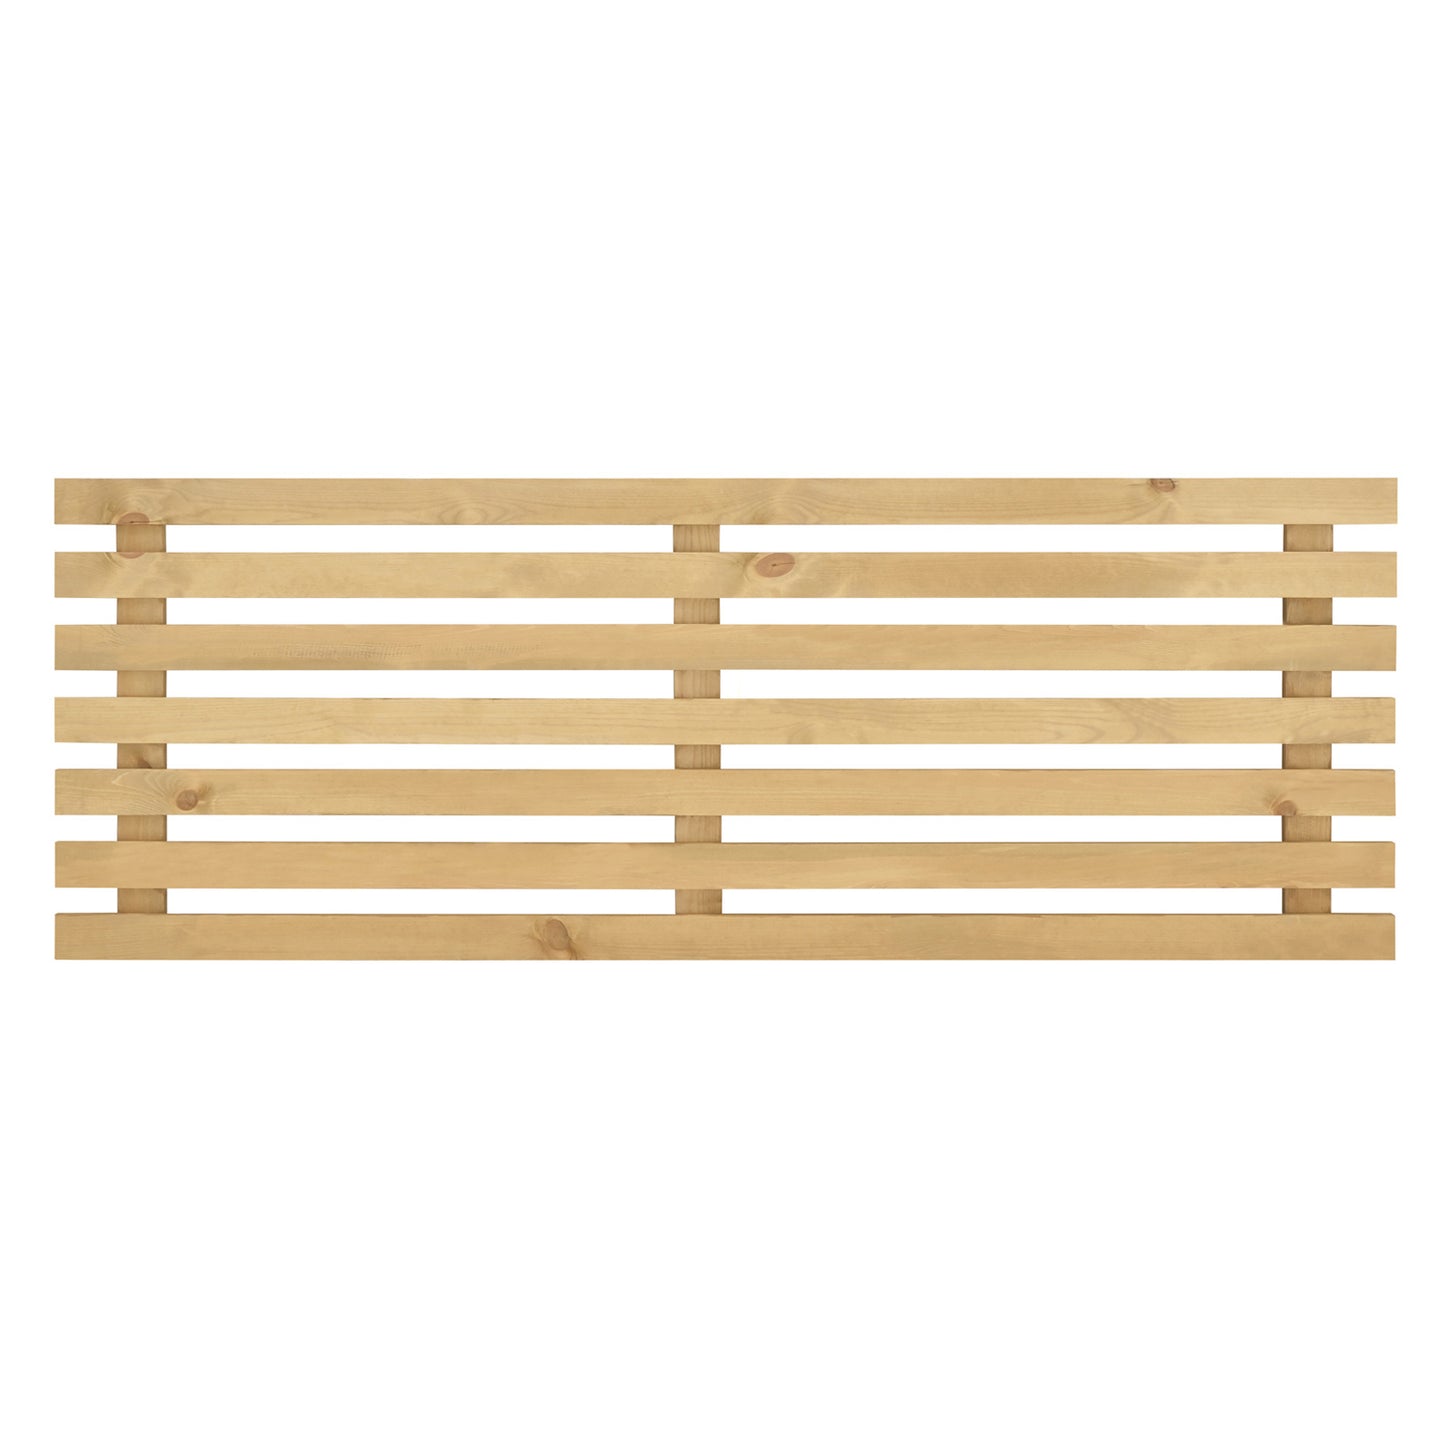 Cabecero de madera maciza en tono olivo de 120x73cm - DECOWOOD